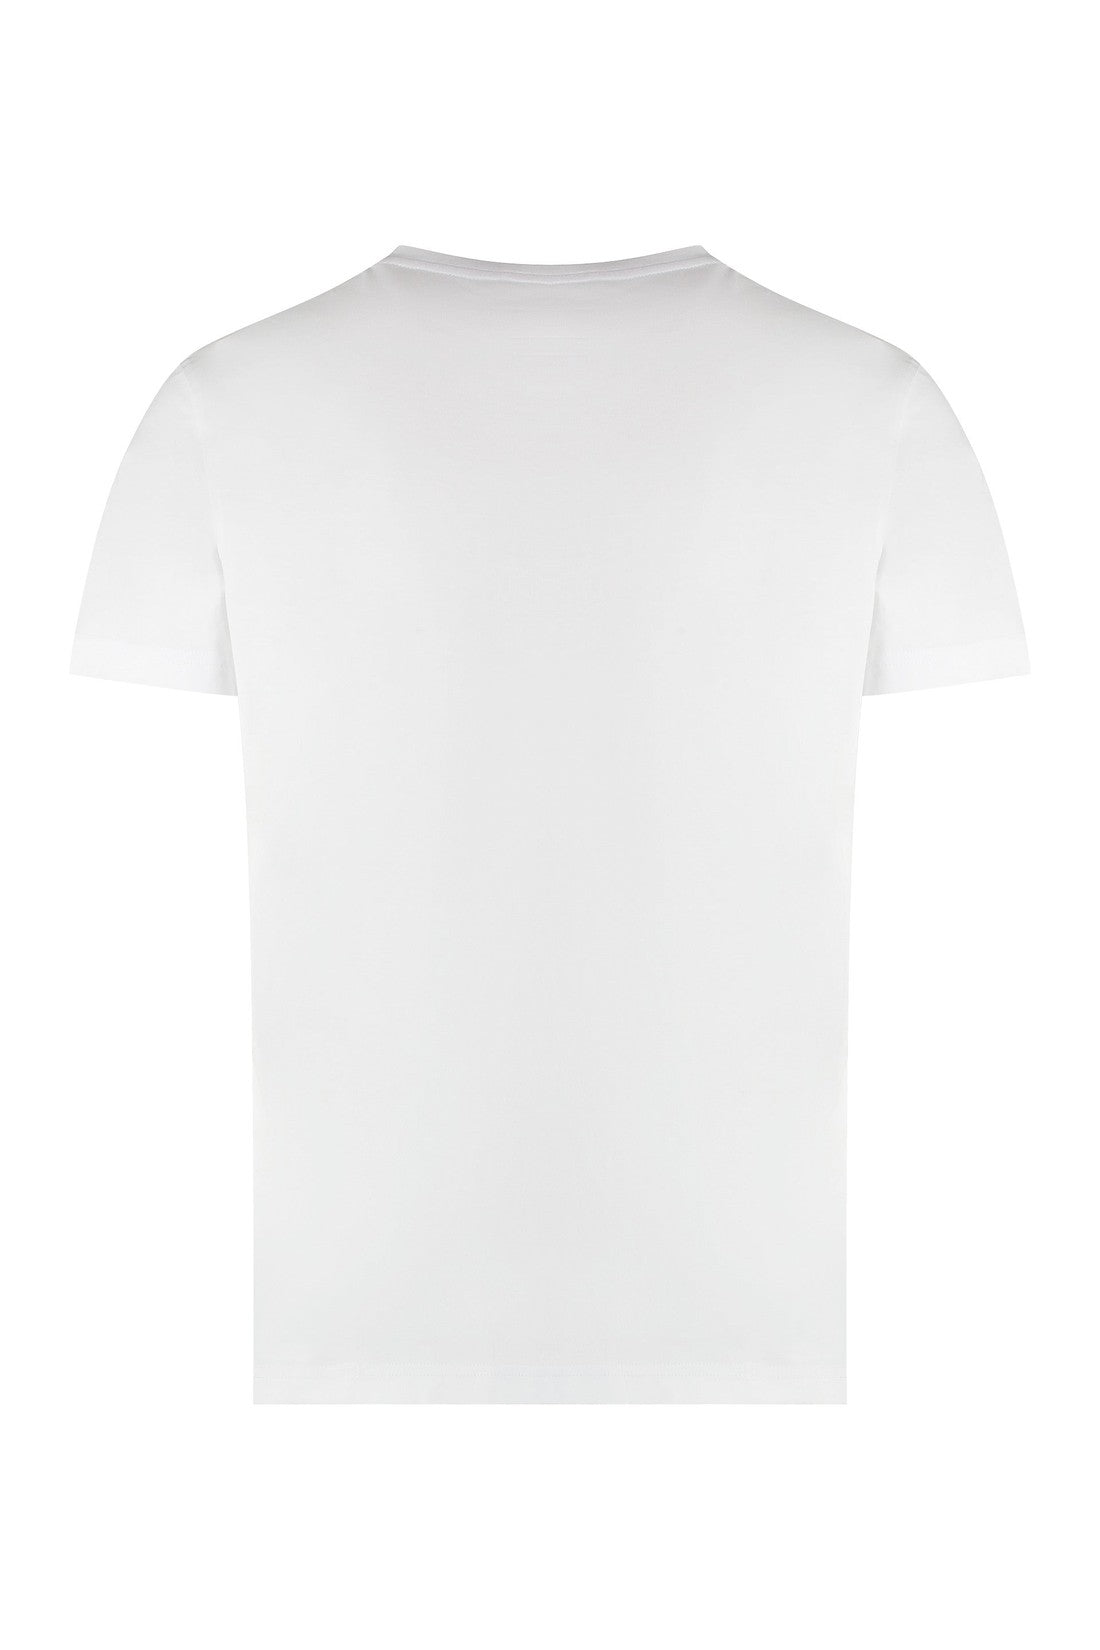 K-Way-OUTLET-SALE-Edouard Cotton crew-neck T-shirt-ARCHIVIST